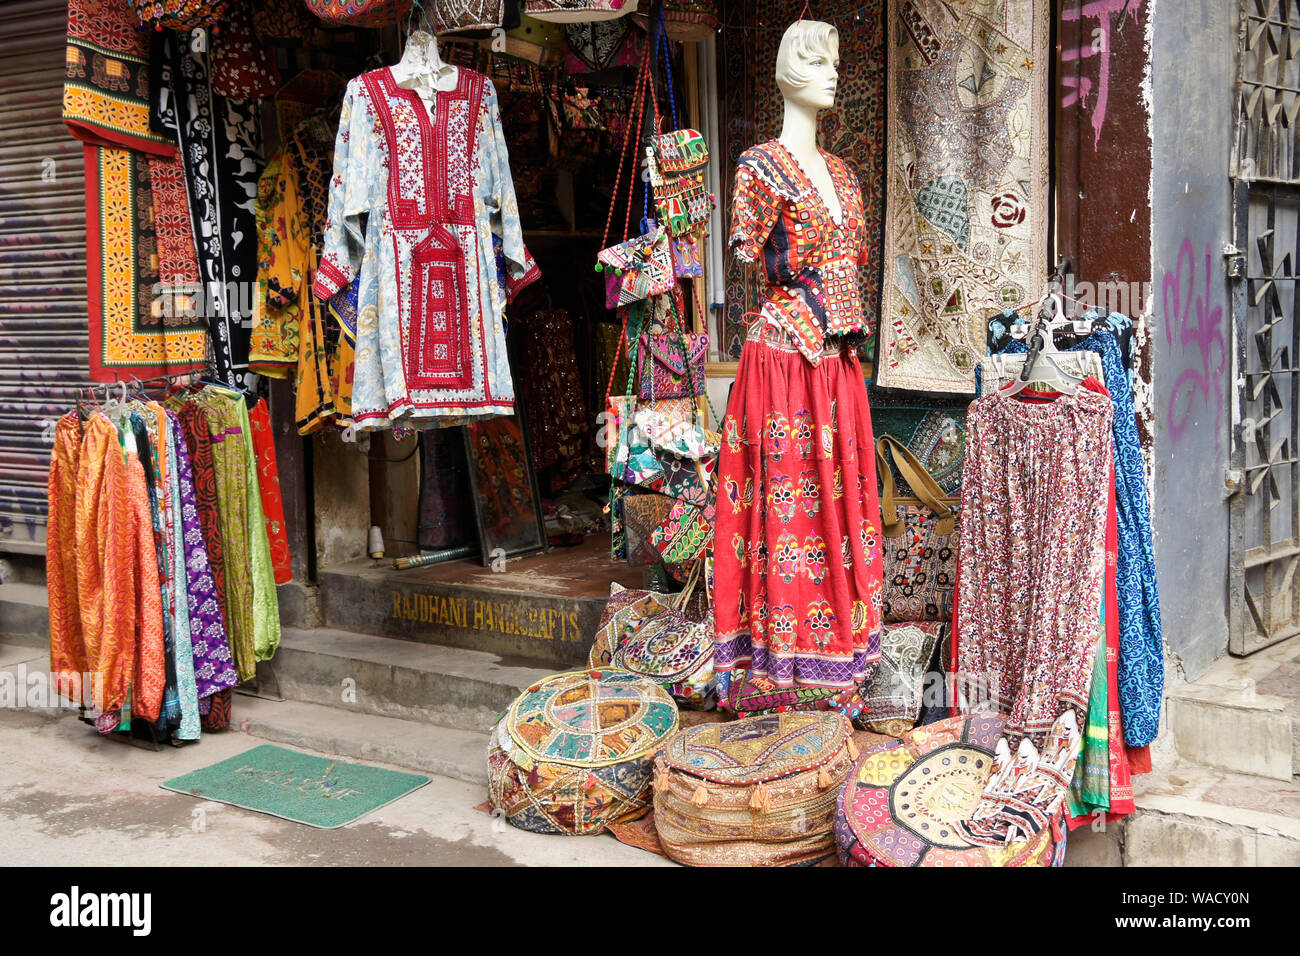 Indische Kleidung und Kunsthandwerk im Shop angezeigt, Thamel Bezirk von  Kathmandu, Nepal Stockfotografie - Alamy